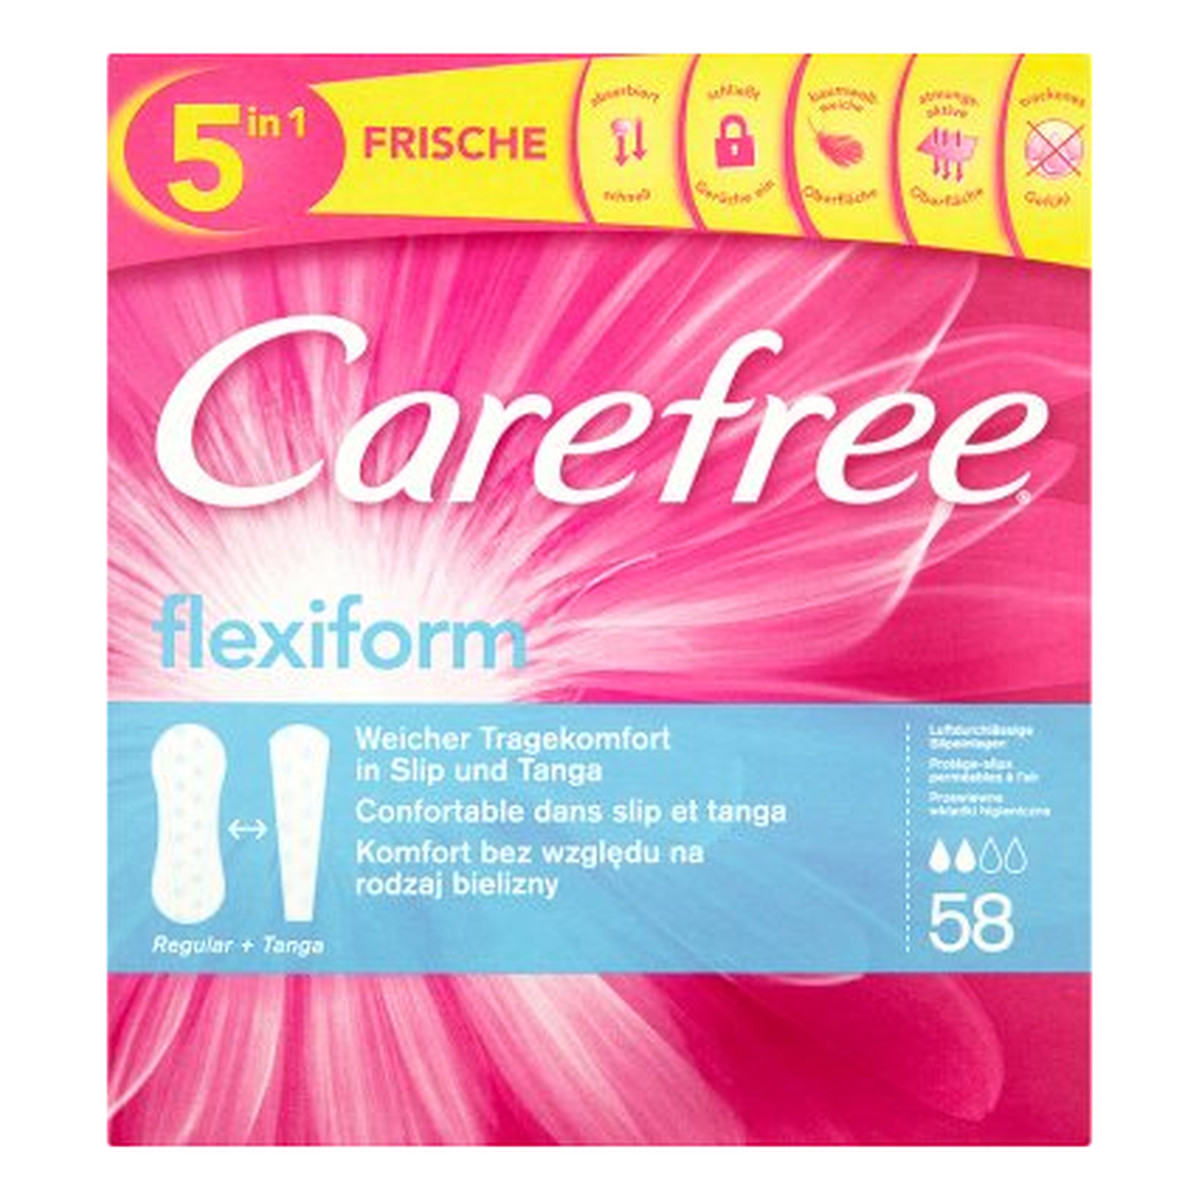 Carefree Flexiform Wkładki Higieniczne 58szt.